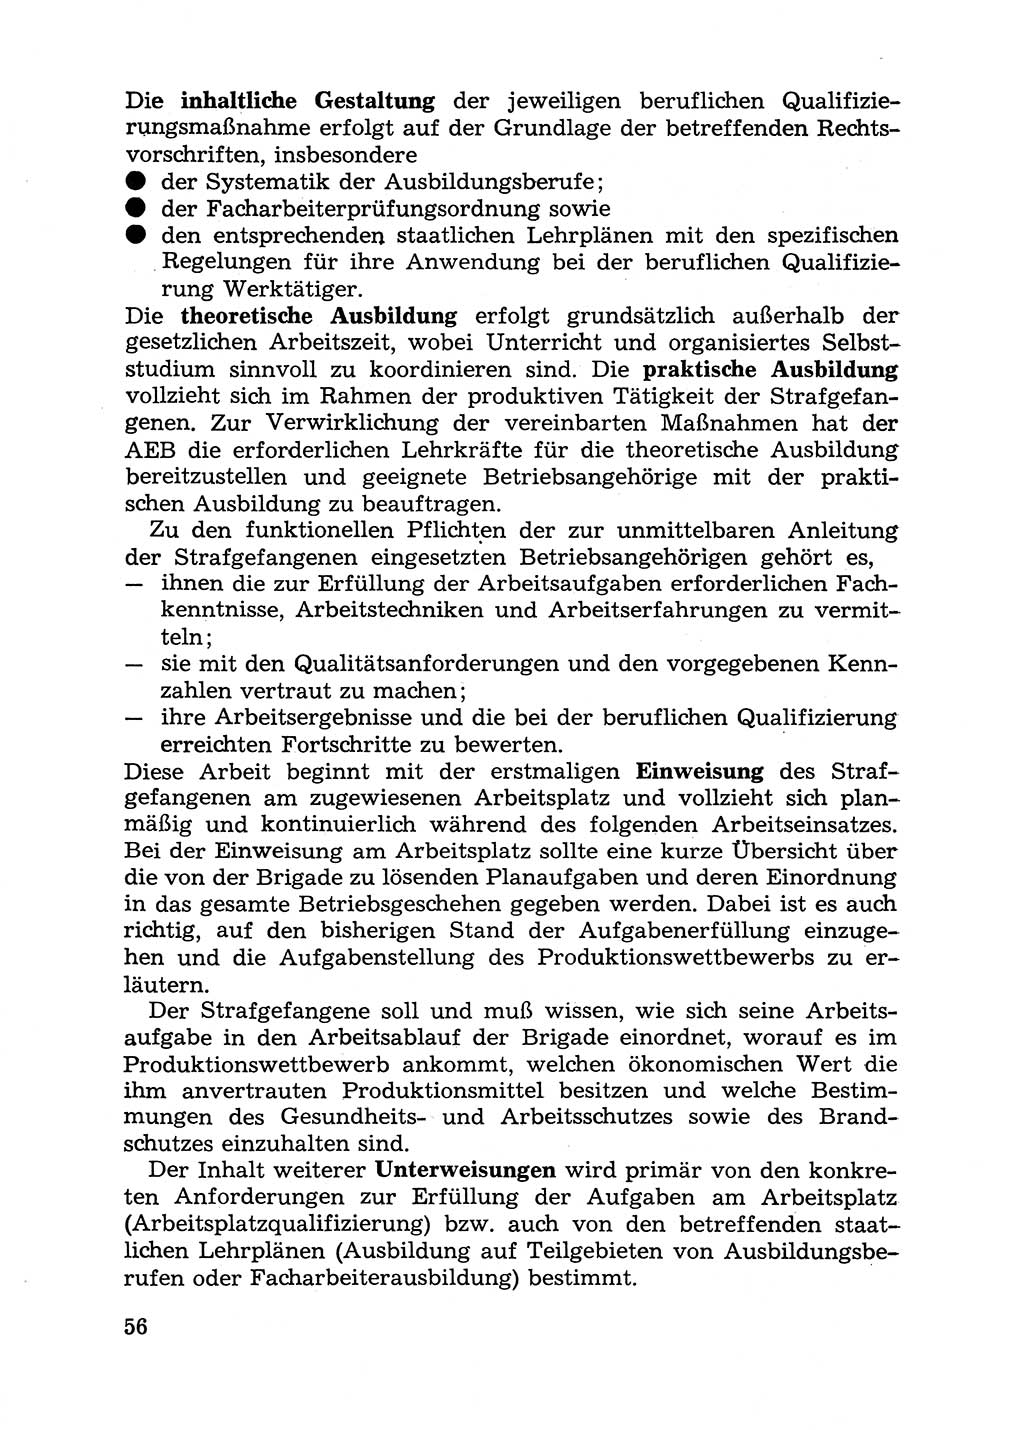 Handbuch für Betriebsangehörige, Abteilung Strafvollzug (SV) [Ministerium des Innern (MdI) Deutsche Demokratische Republik (DDR)] 1981, Seite 56 (Hb. BA Abt. SV MdI DDR 1981, S. 56)